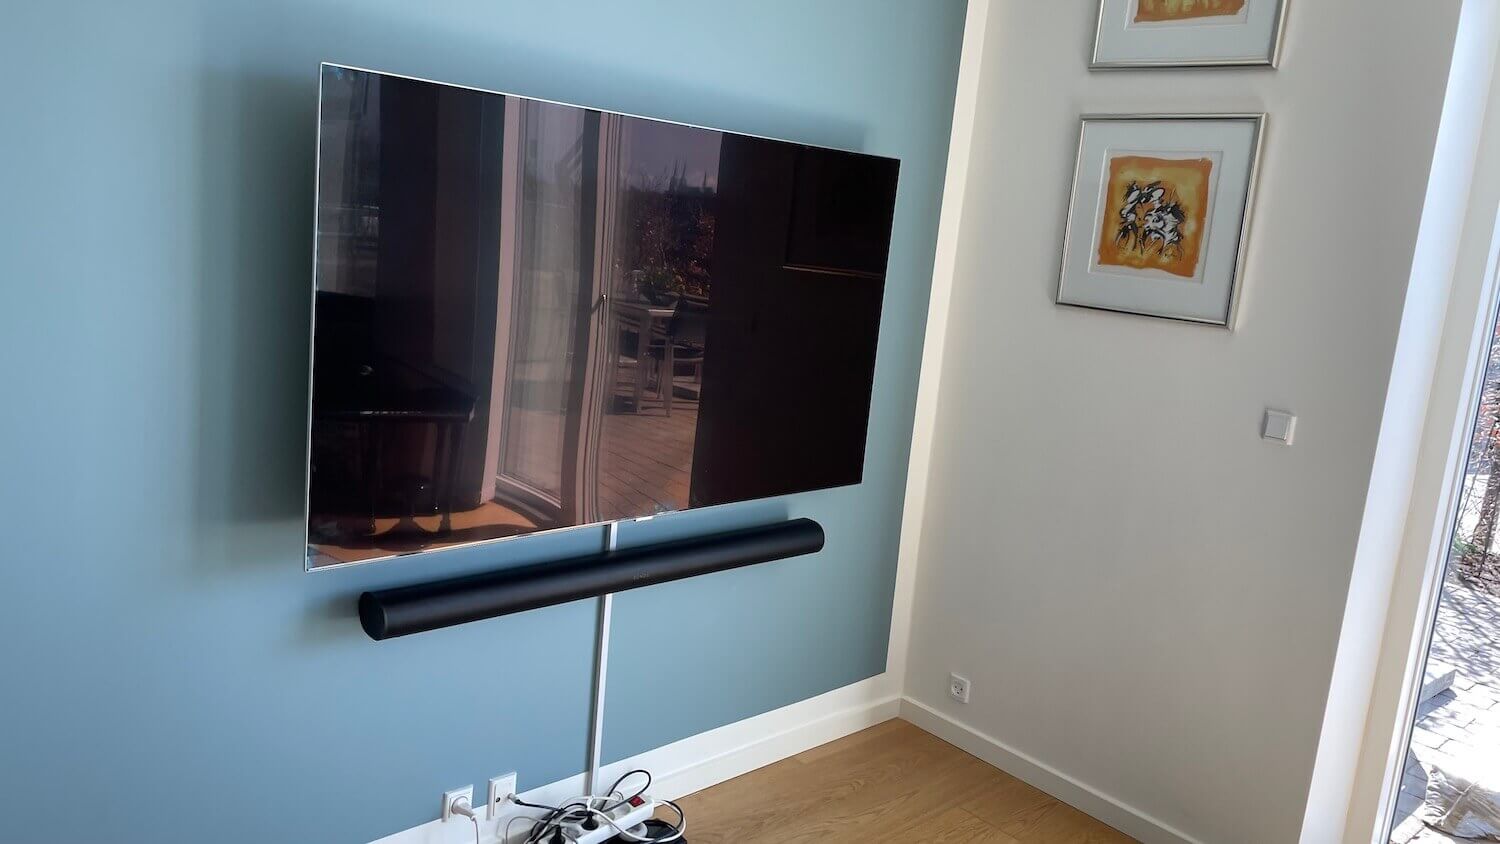 Opsætning af Sonos soundbar, kabelbakke og Samsung TV på vægbeslag med drejefunktion